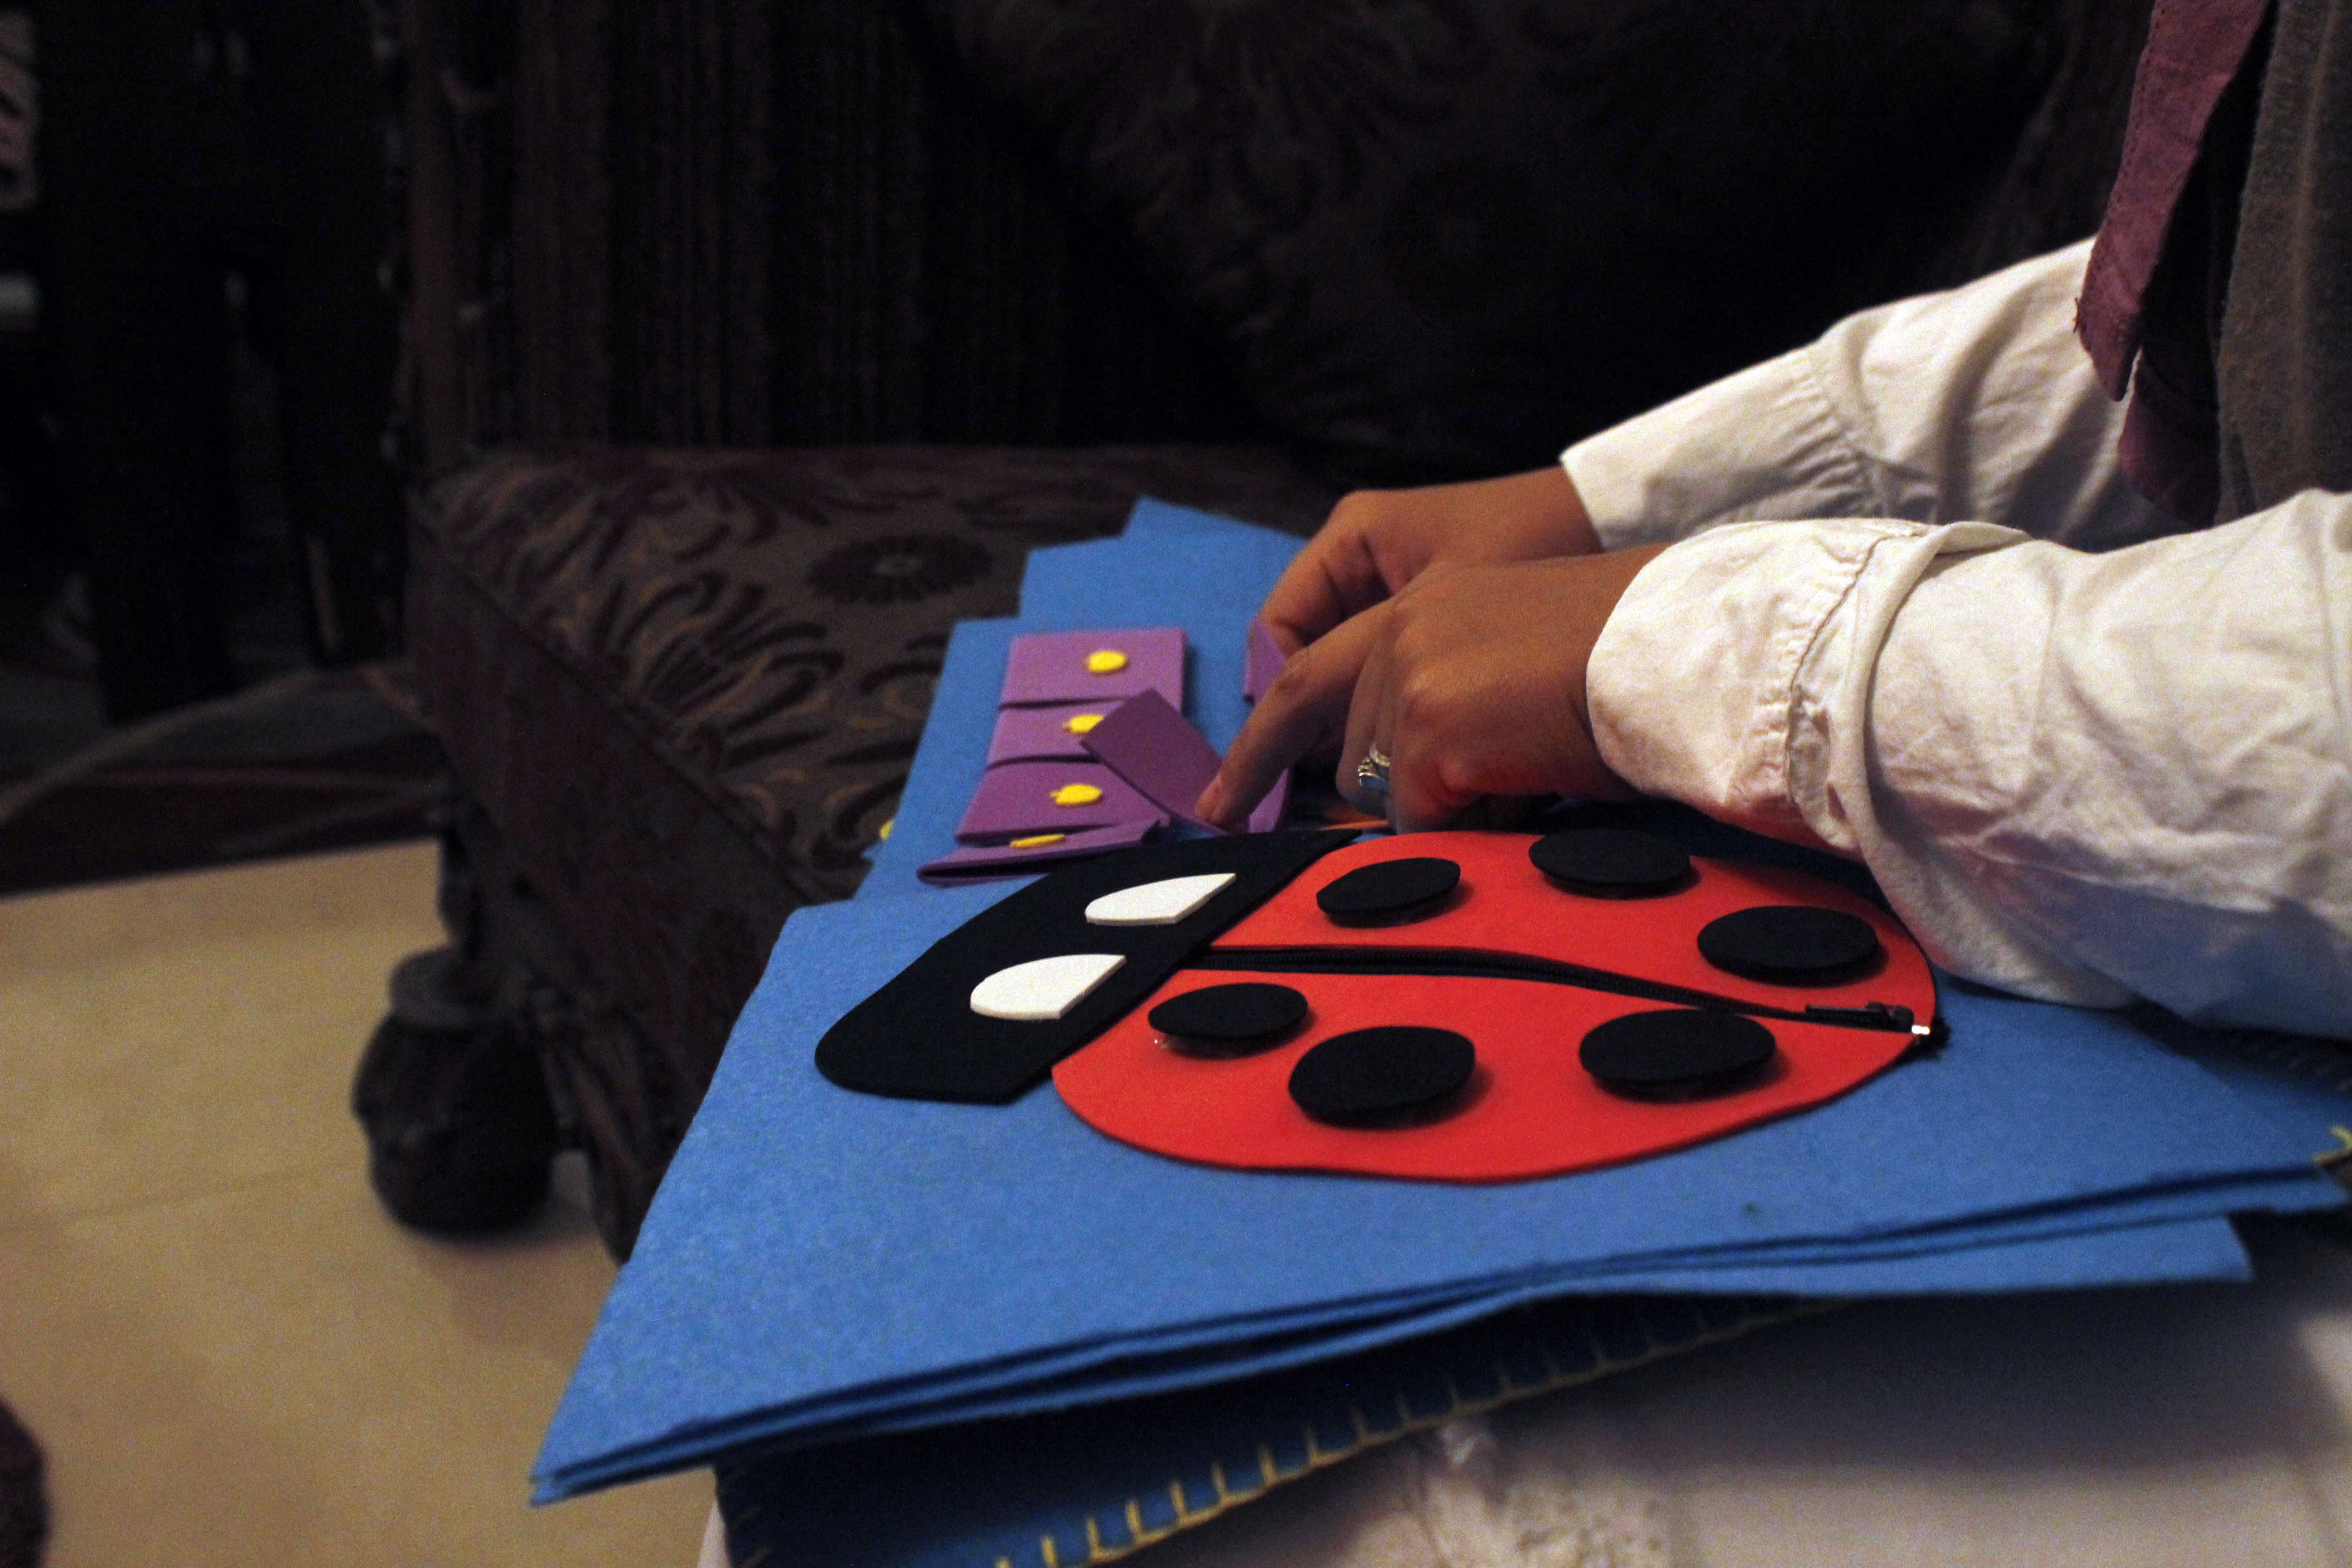 ام   تصنع  كتاب  تفاعلي  للأطفال  -  تصوير  محمد عوض  (1)